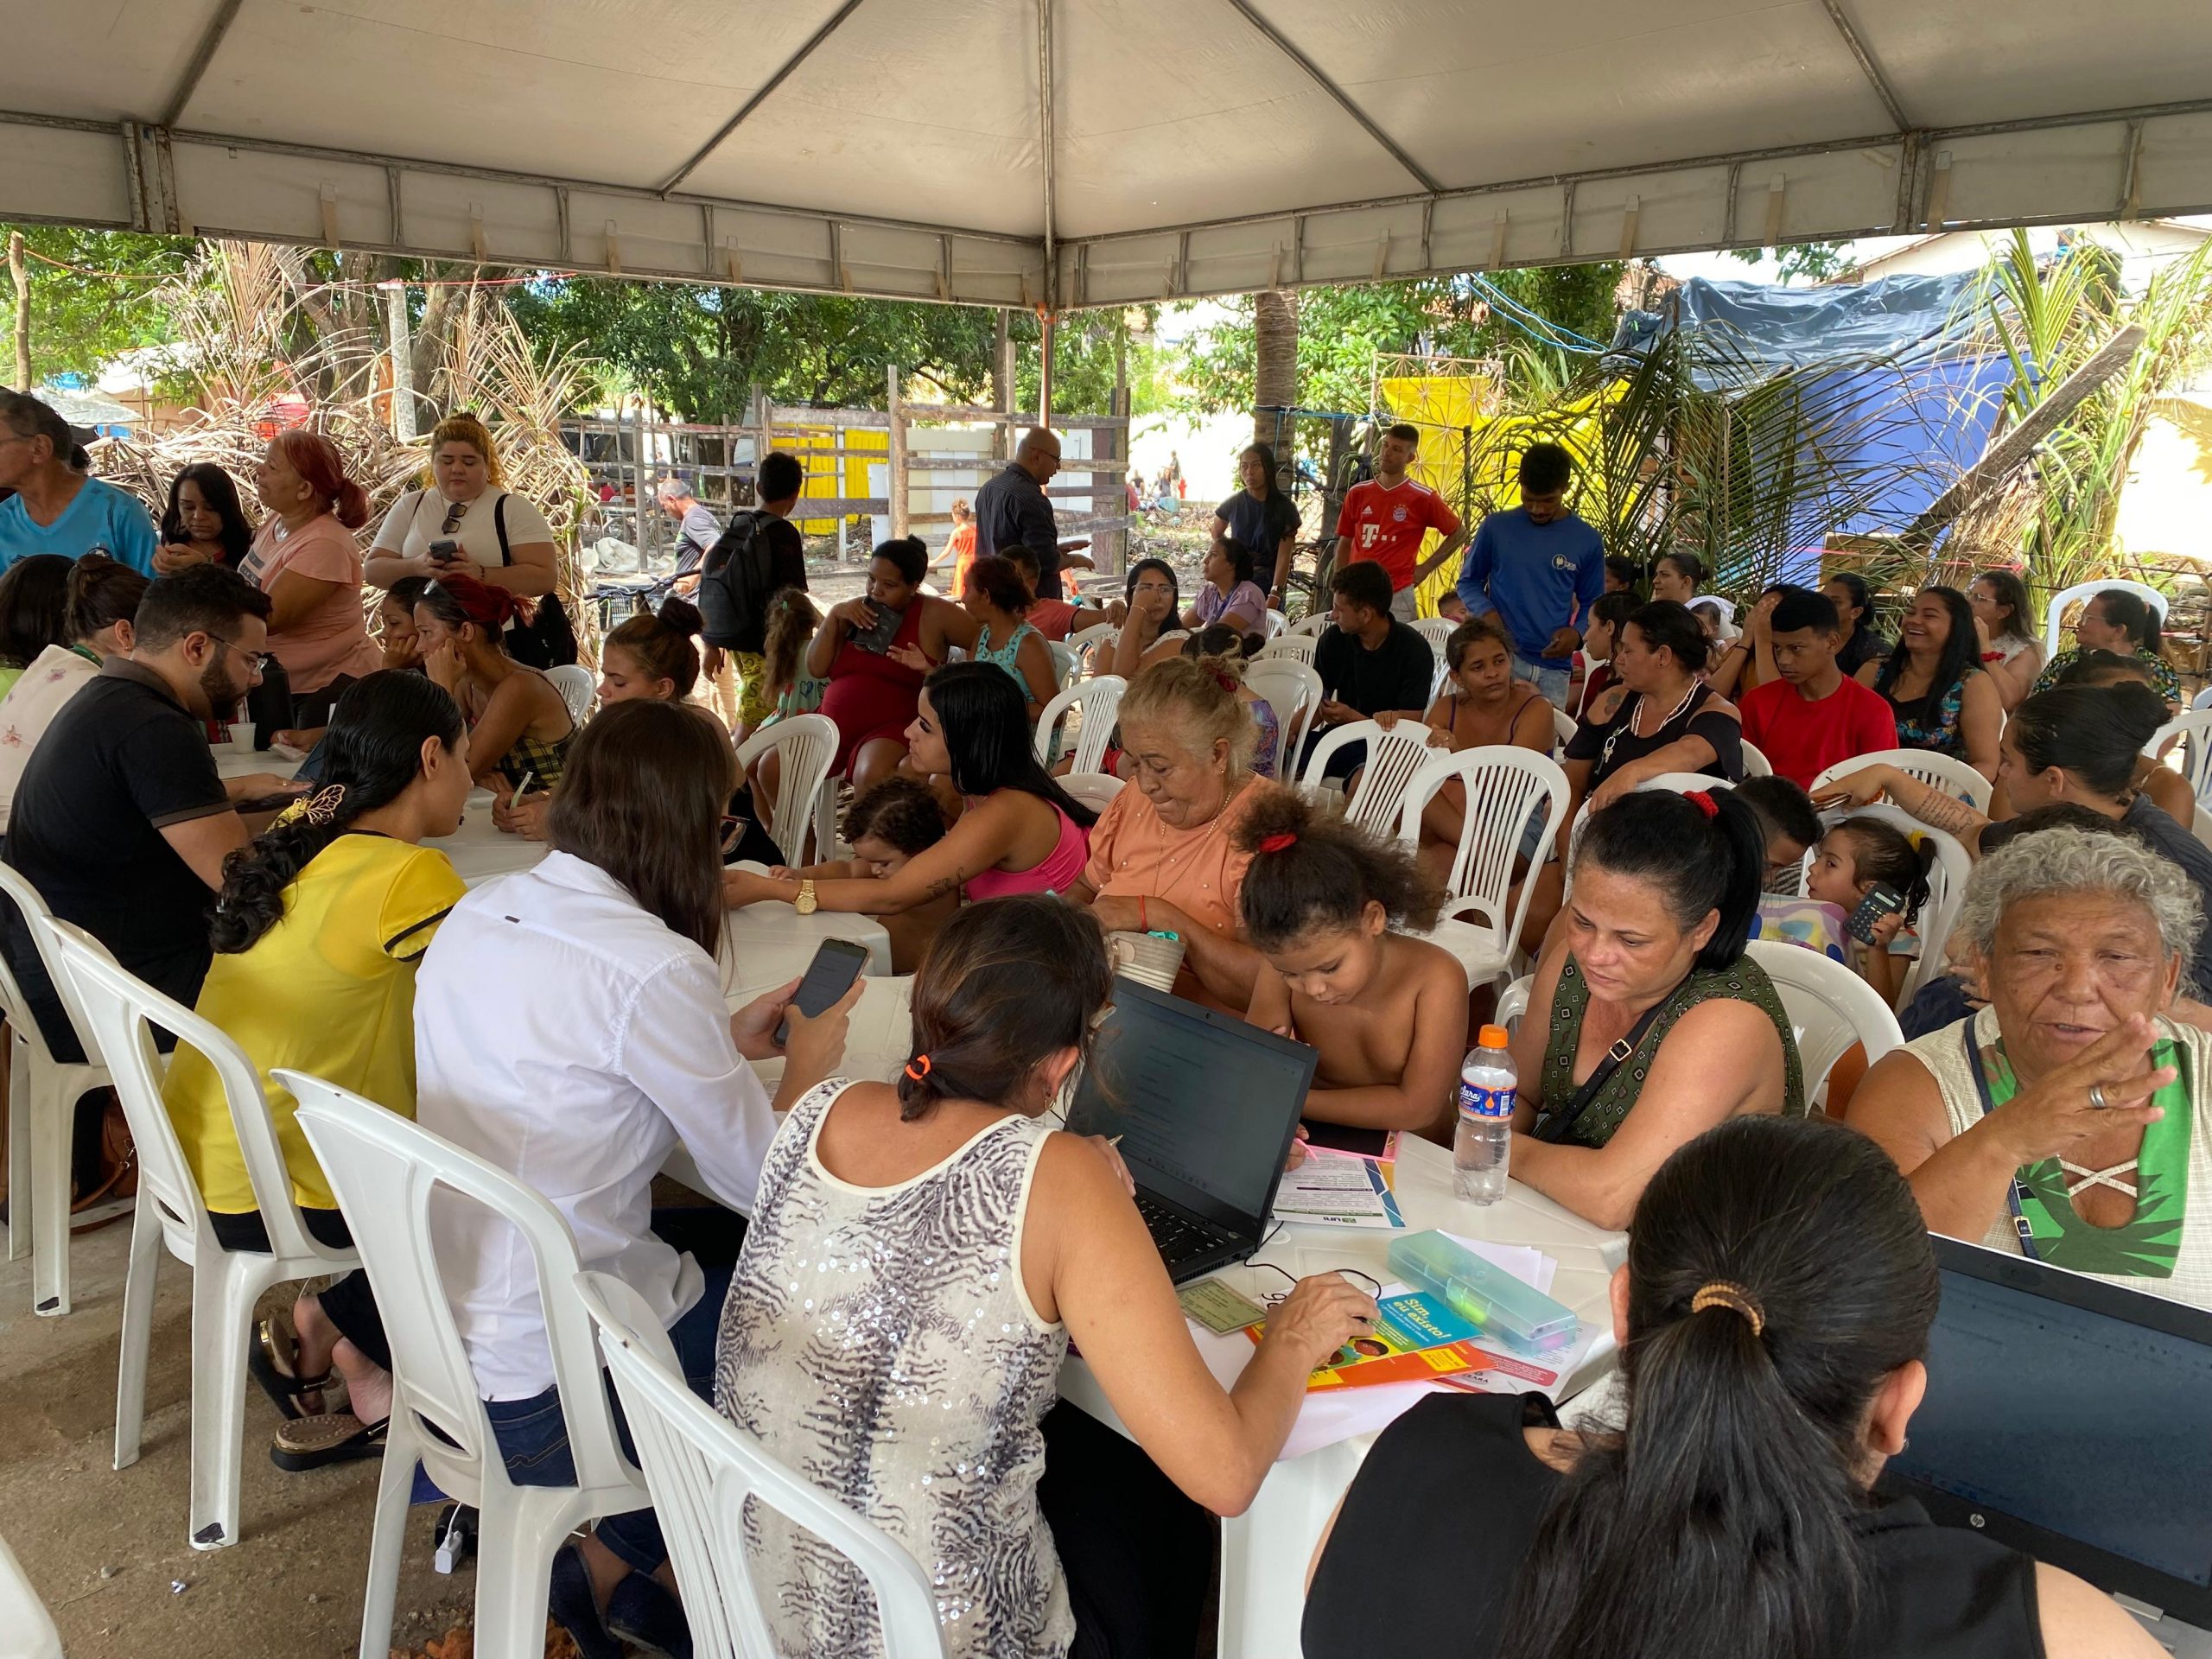 Defensoria Pública realiza atendimentos na ocupação Reviver, em Fortaleza